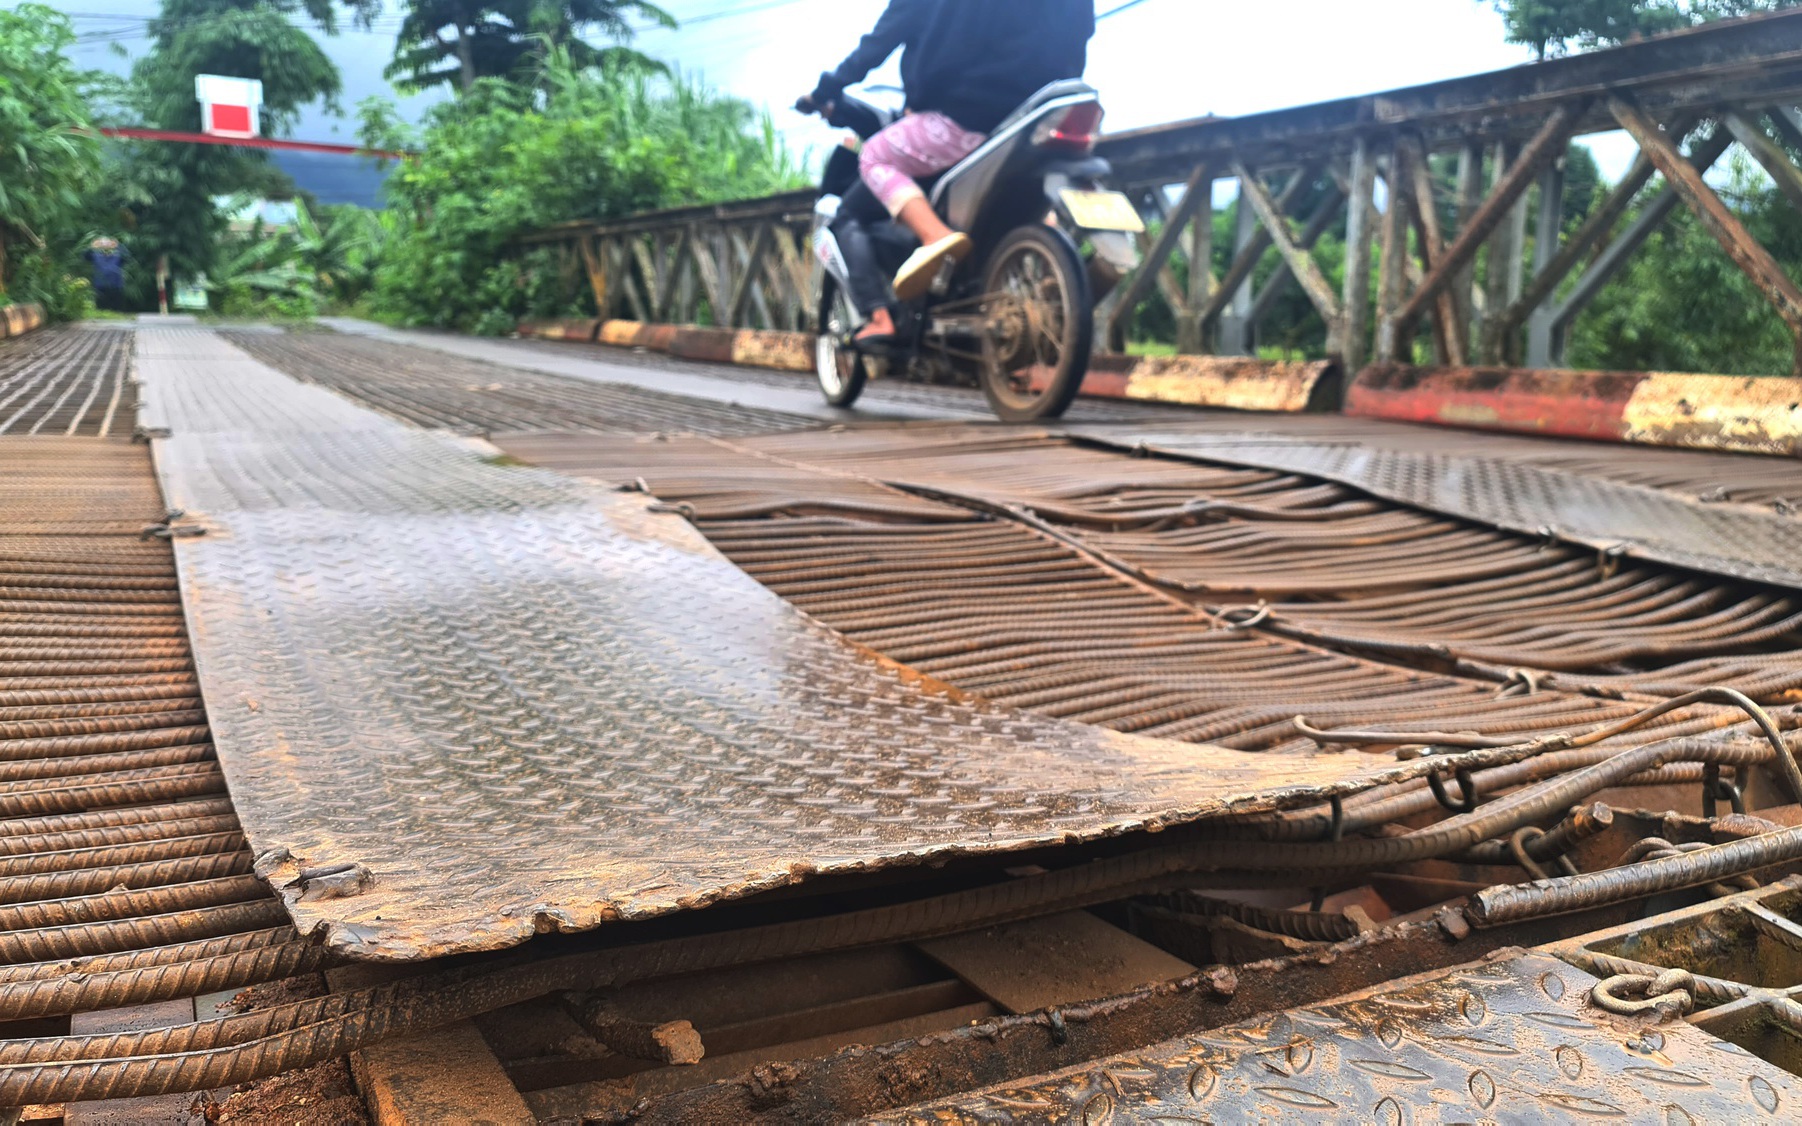 Ớn lạnh đi qua cây cầu có tấm sắt vênh lên mặt cầu gần 1 gang tay ở Lâm Đồng